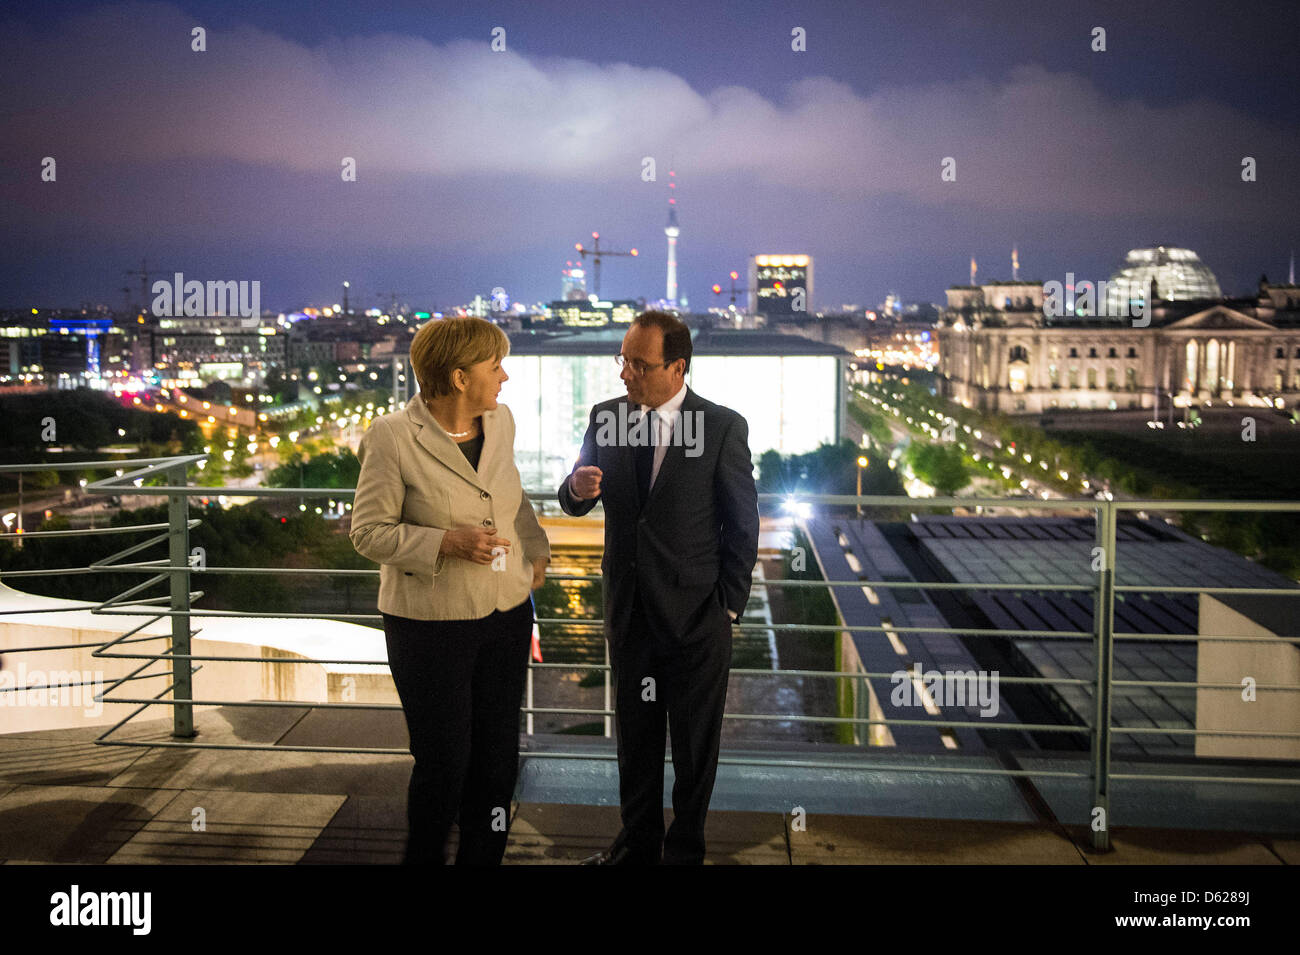 Bundeskanzlerin Angela Merkel (CDU) und der französische Präsident Francois Hollande unterhalten sich am Dienstag (15.05.2012) vor ihrem Arbeitsessen im Bundeskanzleramt - im Hintergrund der Reichstag mit dem Regierungsviertel. Der Berlinbesuch ist die erste Auslandsreise des sozialistischen Politikers als Staatspräsident. Foto: Guido Bergmann dpa/lbn  +++(c) dpa - Bildfunk+++ Stock Photo